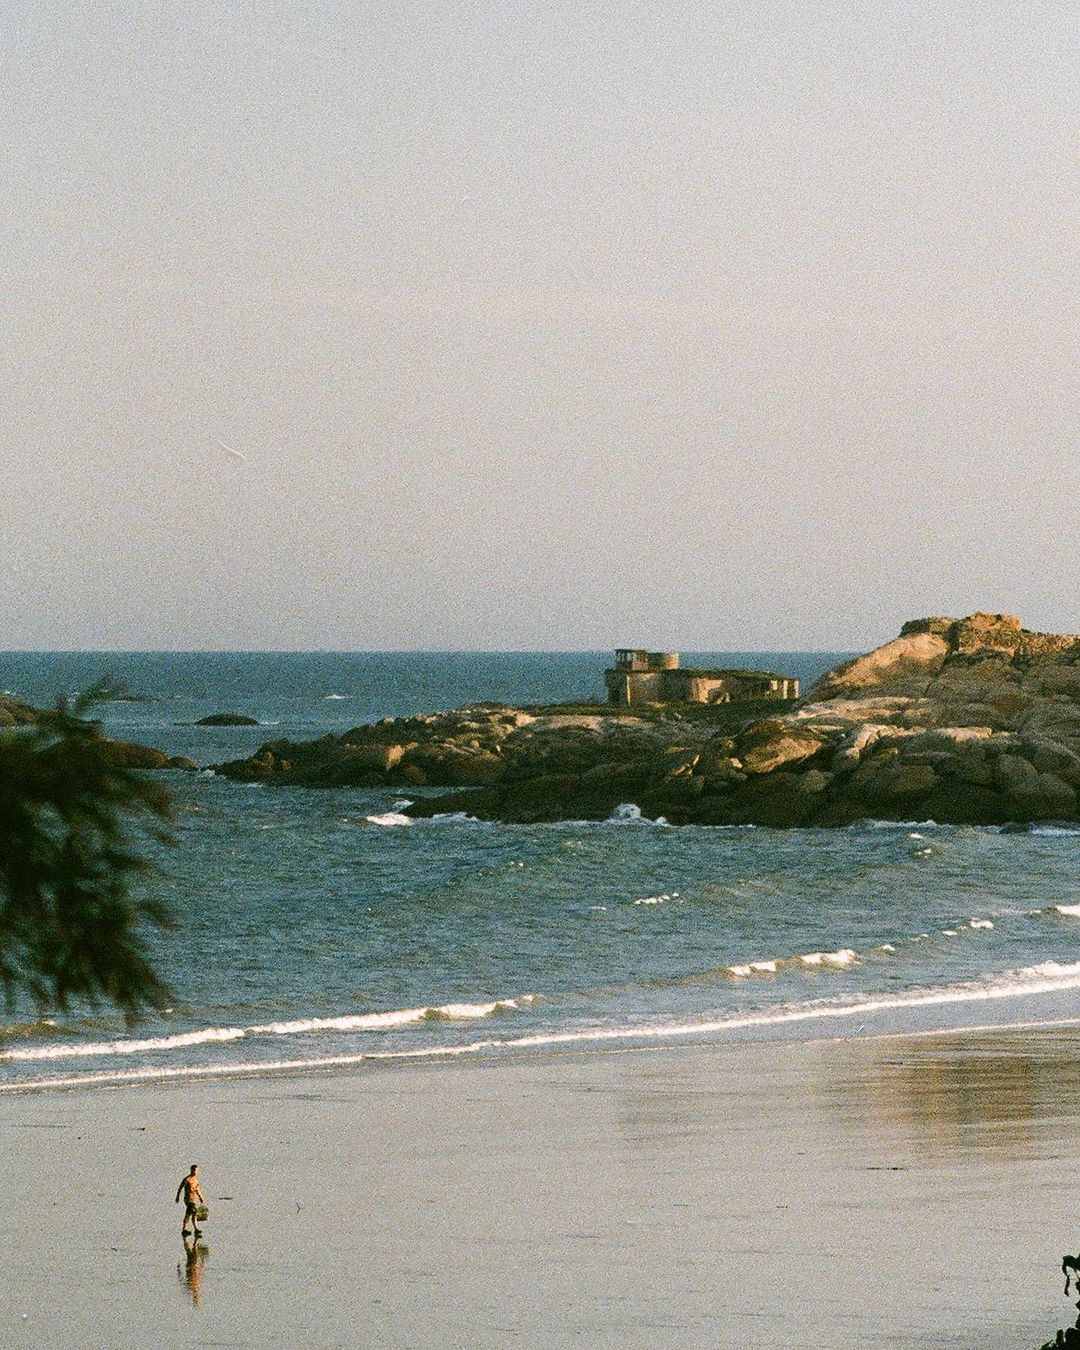 咕力岸
位於熱門景點「峰上巡檢司」旁，有一處潔淨且優美的海灘，名為咕力岸，這裡是欣賞日出的好點位，也是金門夏季盡情戲水踏浪的美麗沙...